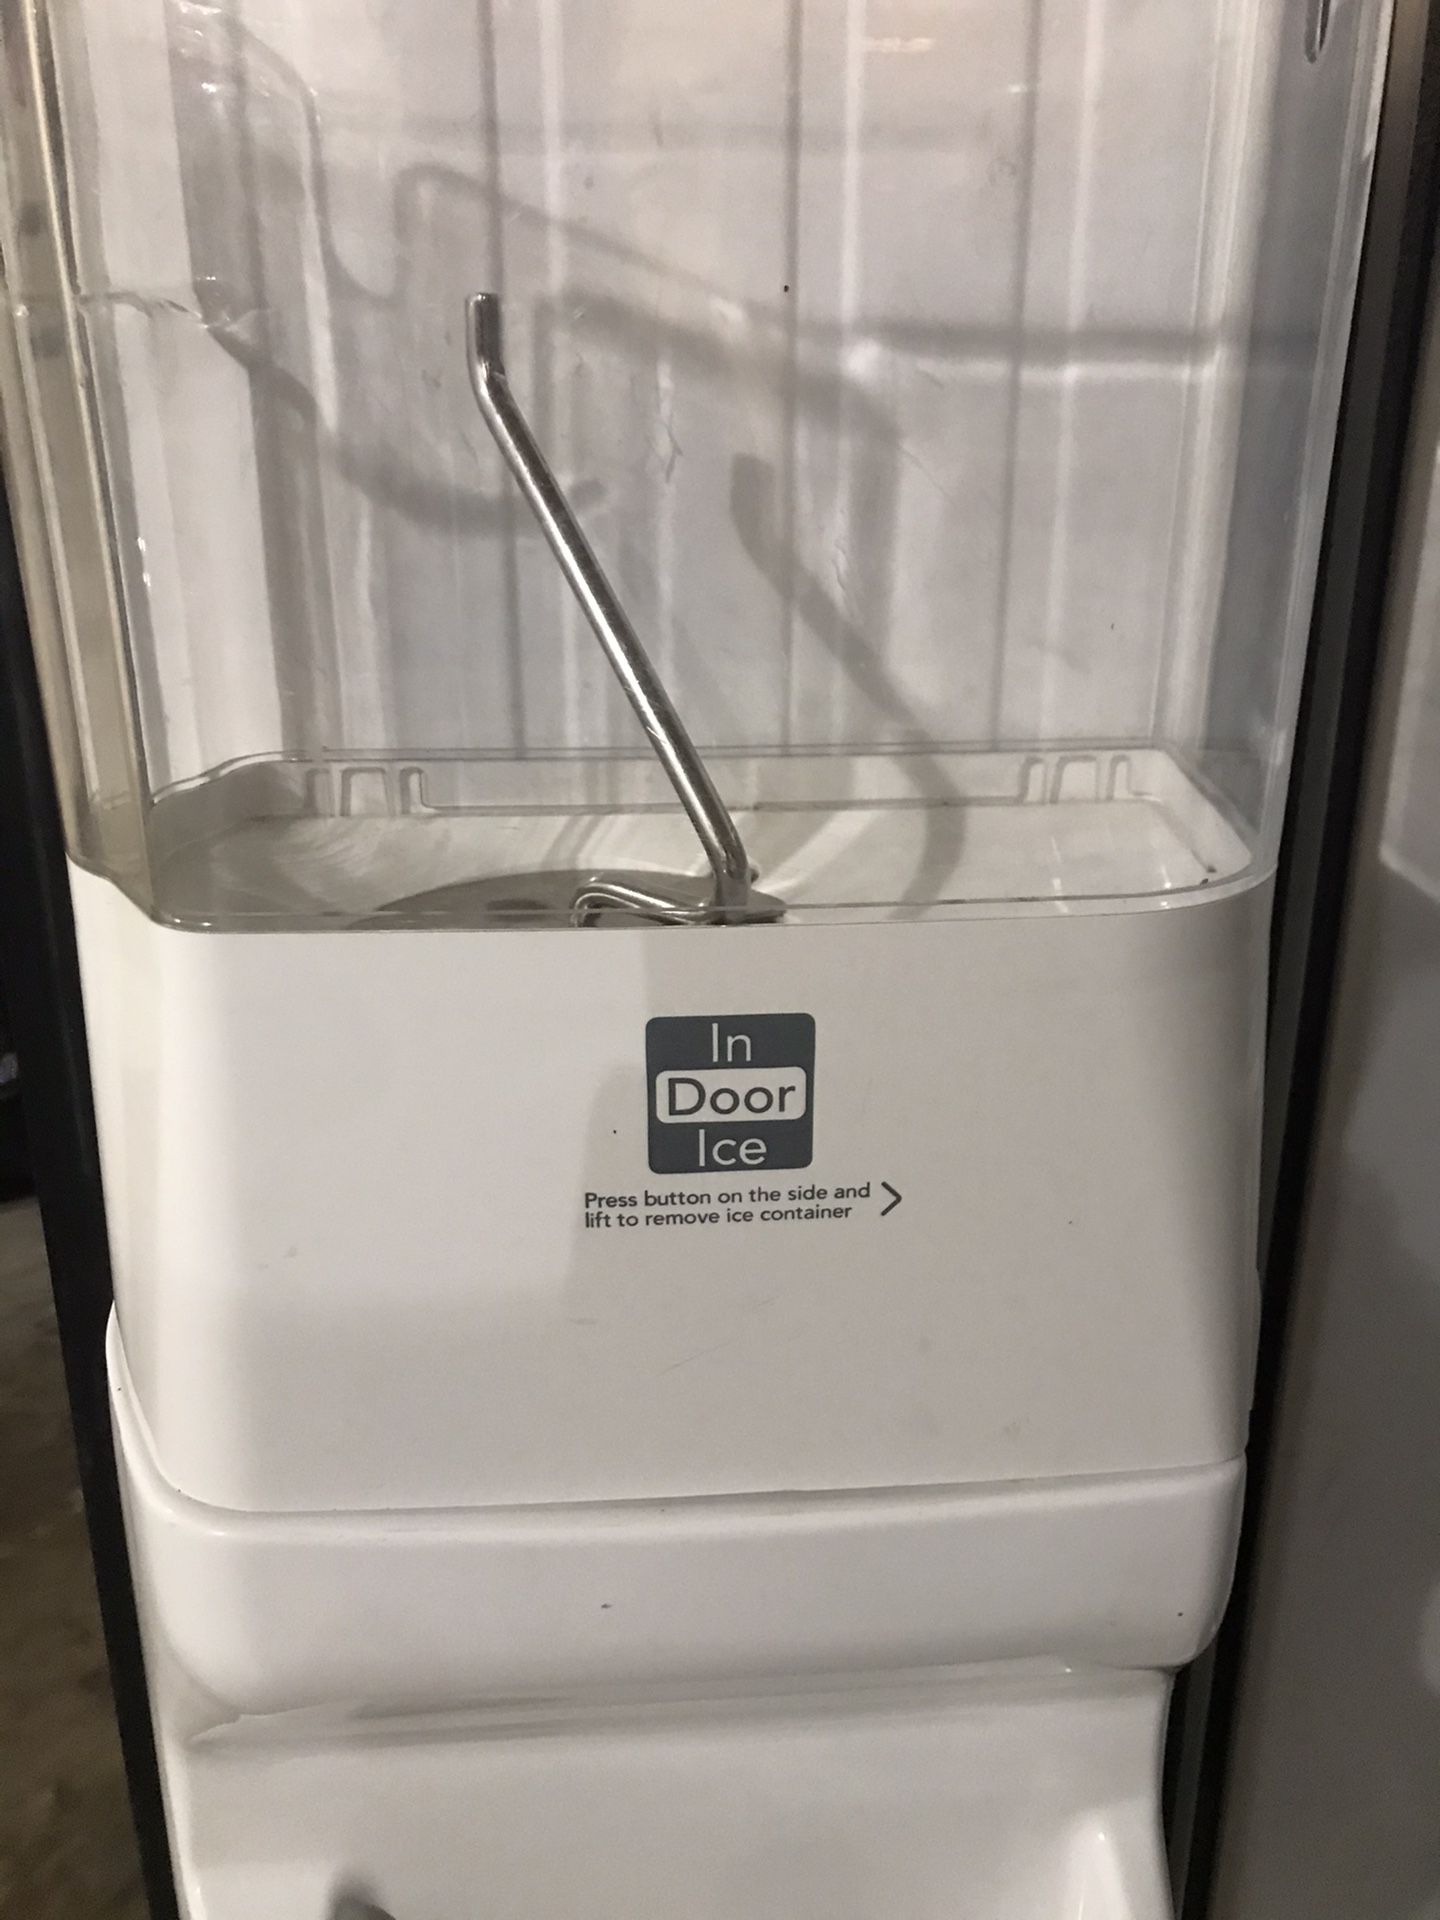 Kitchen aid stainless steel refrigerator